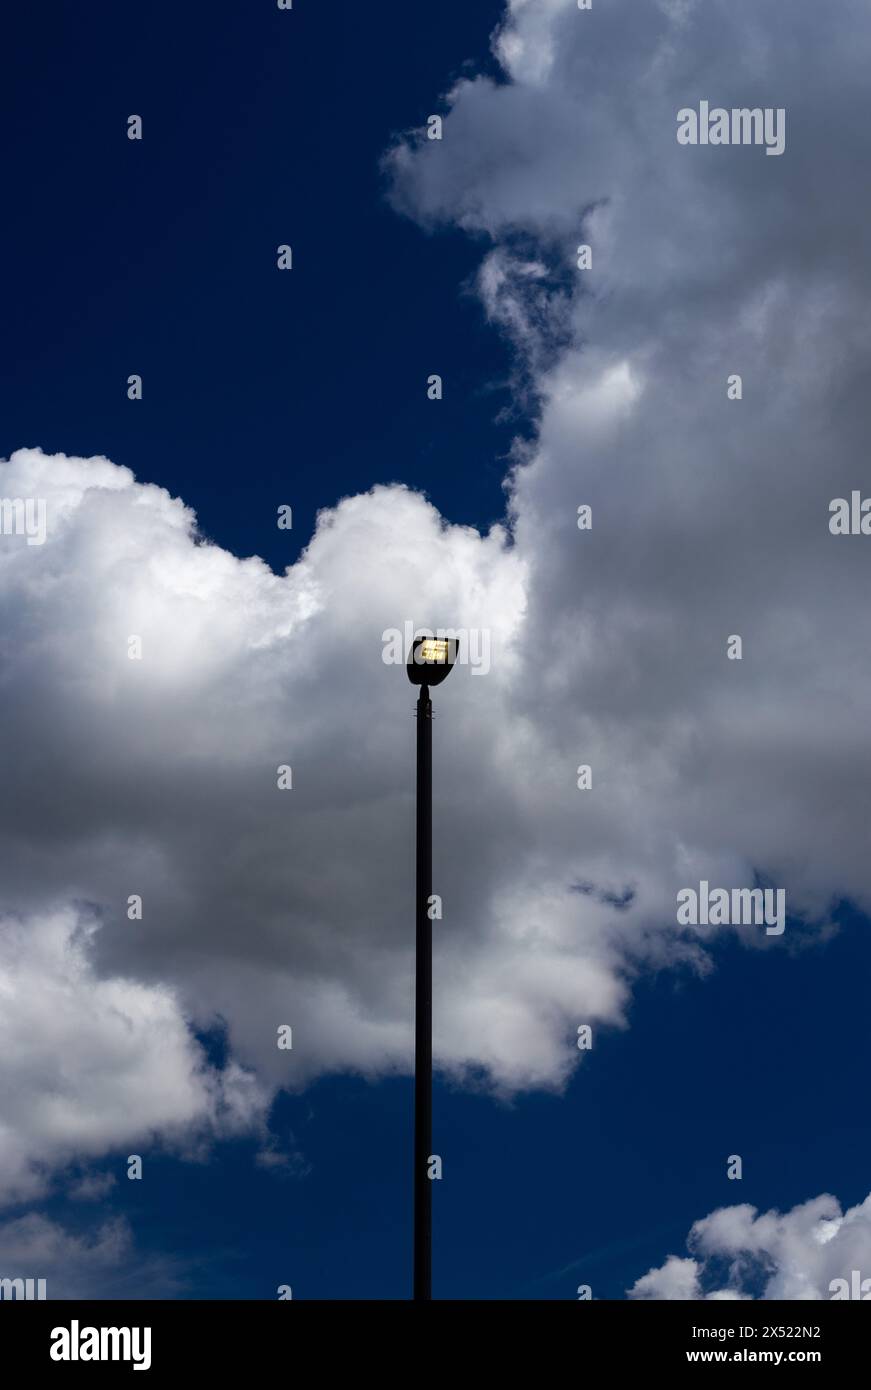 Le luci a LED si accendono di giorno con un cielo azzurro e nuvole bianche. I piedistalli alti per lampade sono verticali sia in verticale che in orizzontale. Spazio per una copia Foto Stock